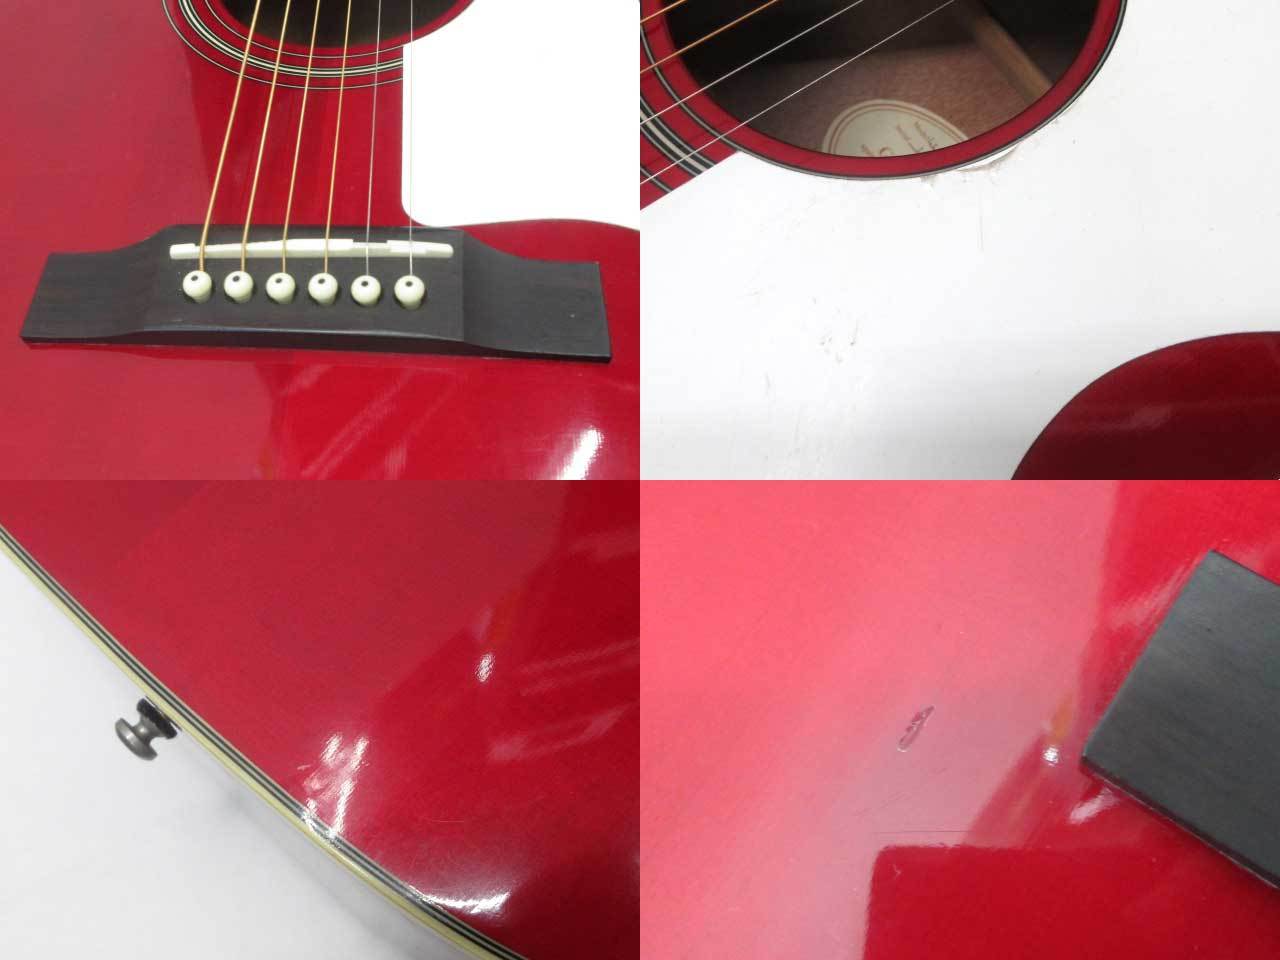 美品】Epiphone アコースティックギター 1963年 EJ-45 WR - ギター